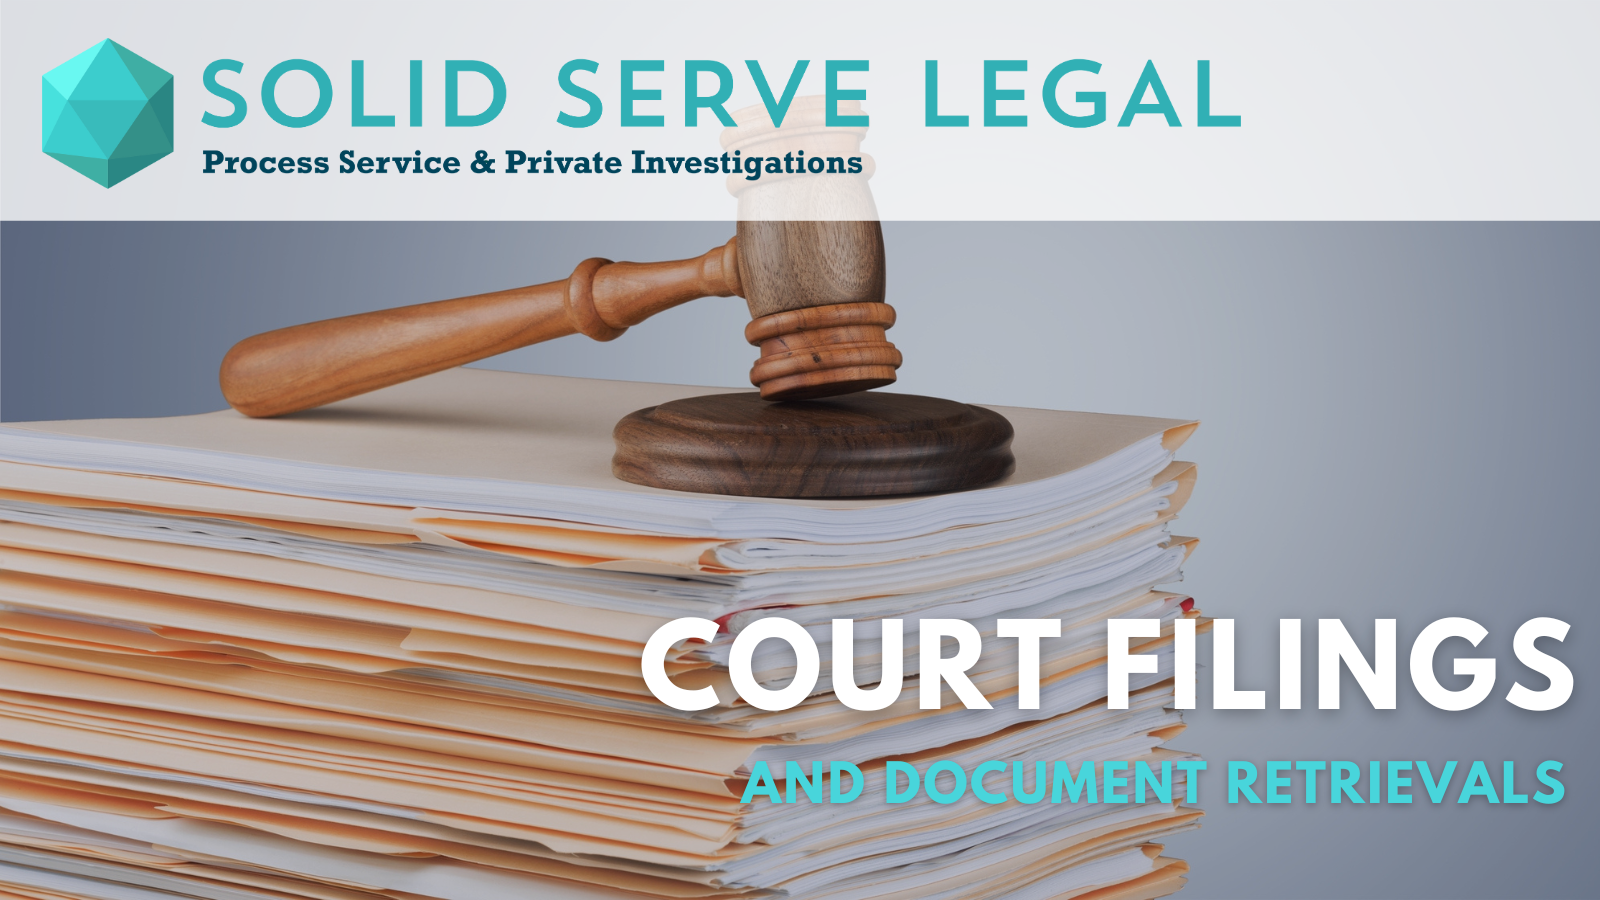 Court Filings and Document Retrievals